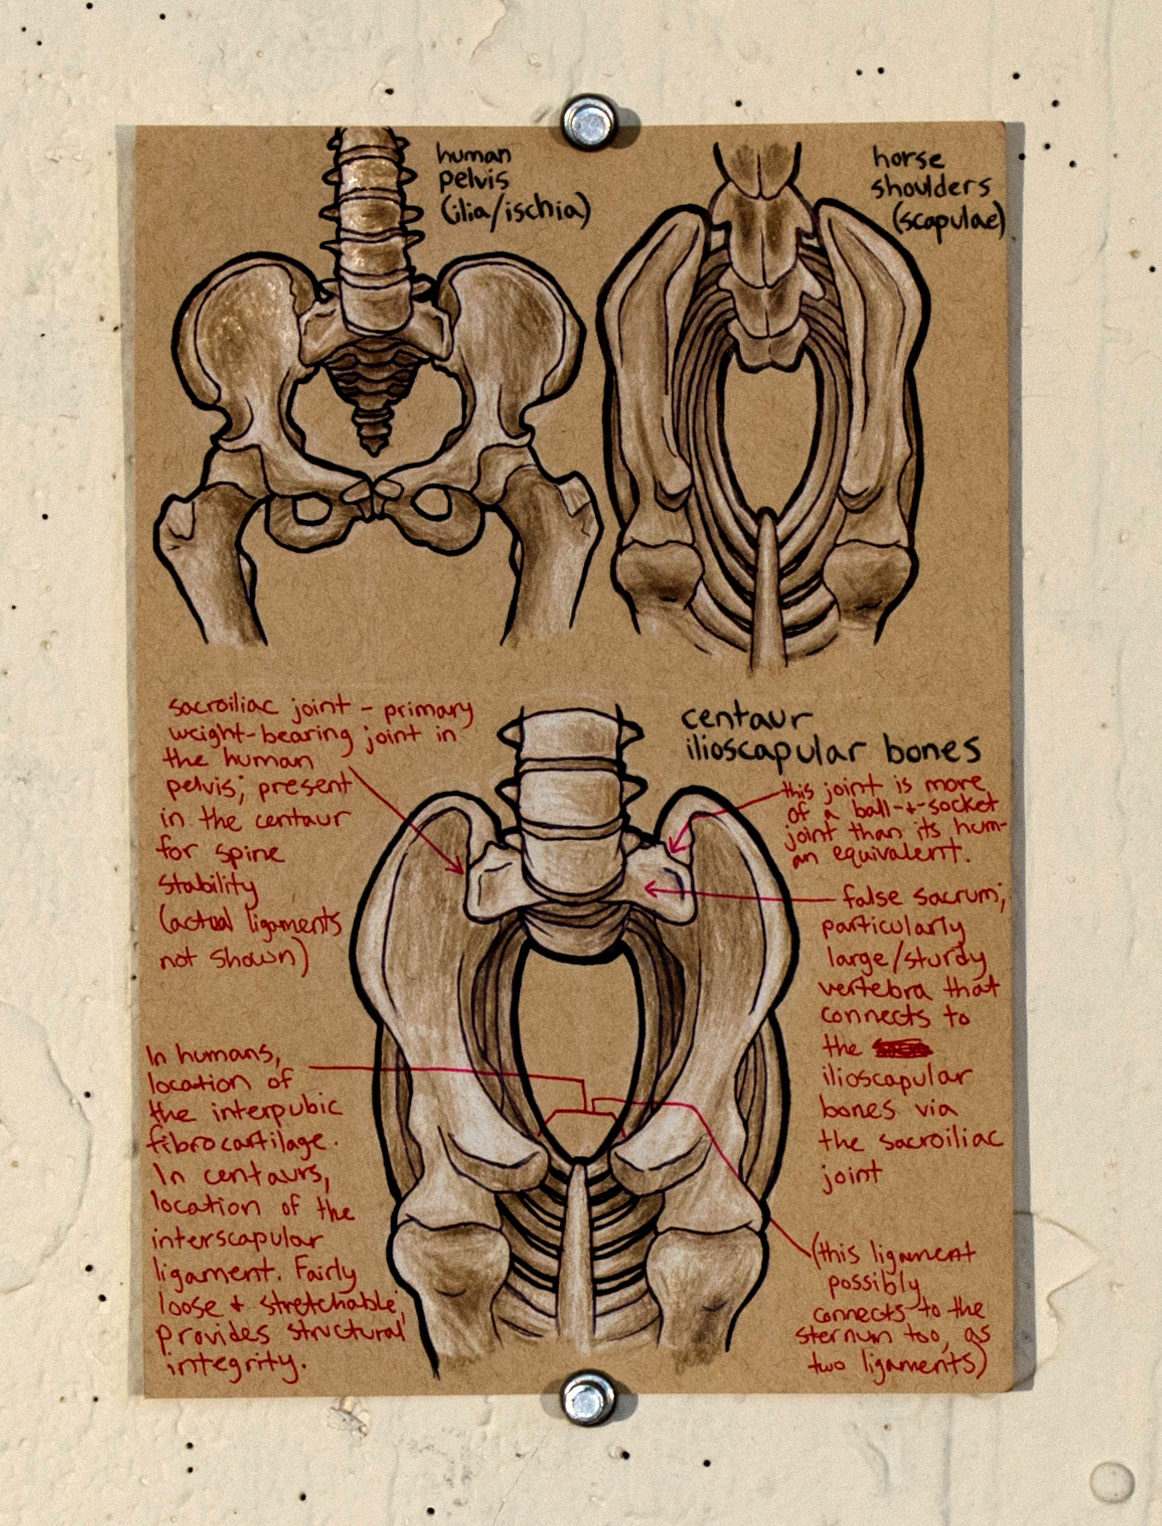 Centaur kentauride centaurette centauress anatomy medical illustration anatomical illustration skeleton muscular musculoskeletal system horse